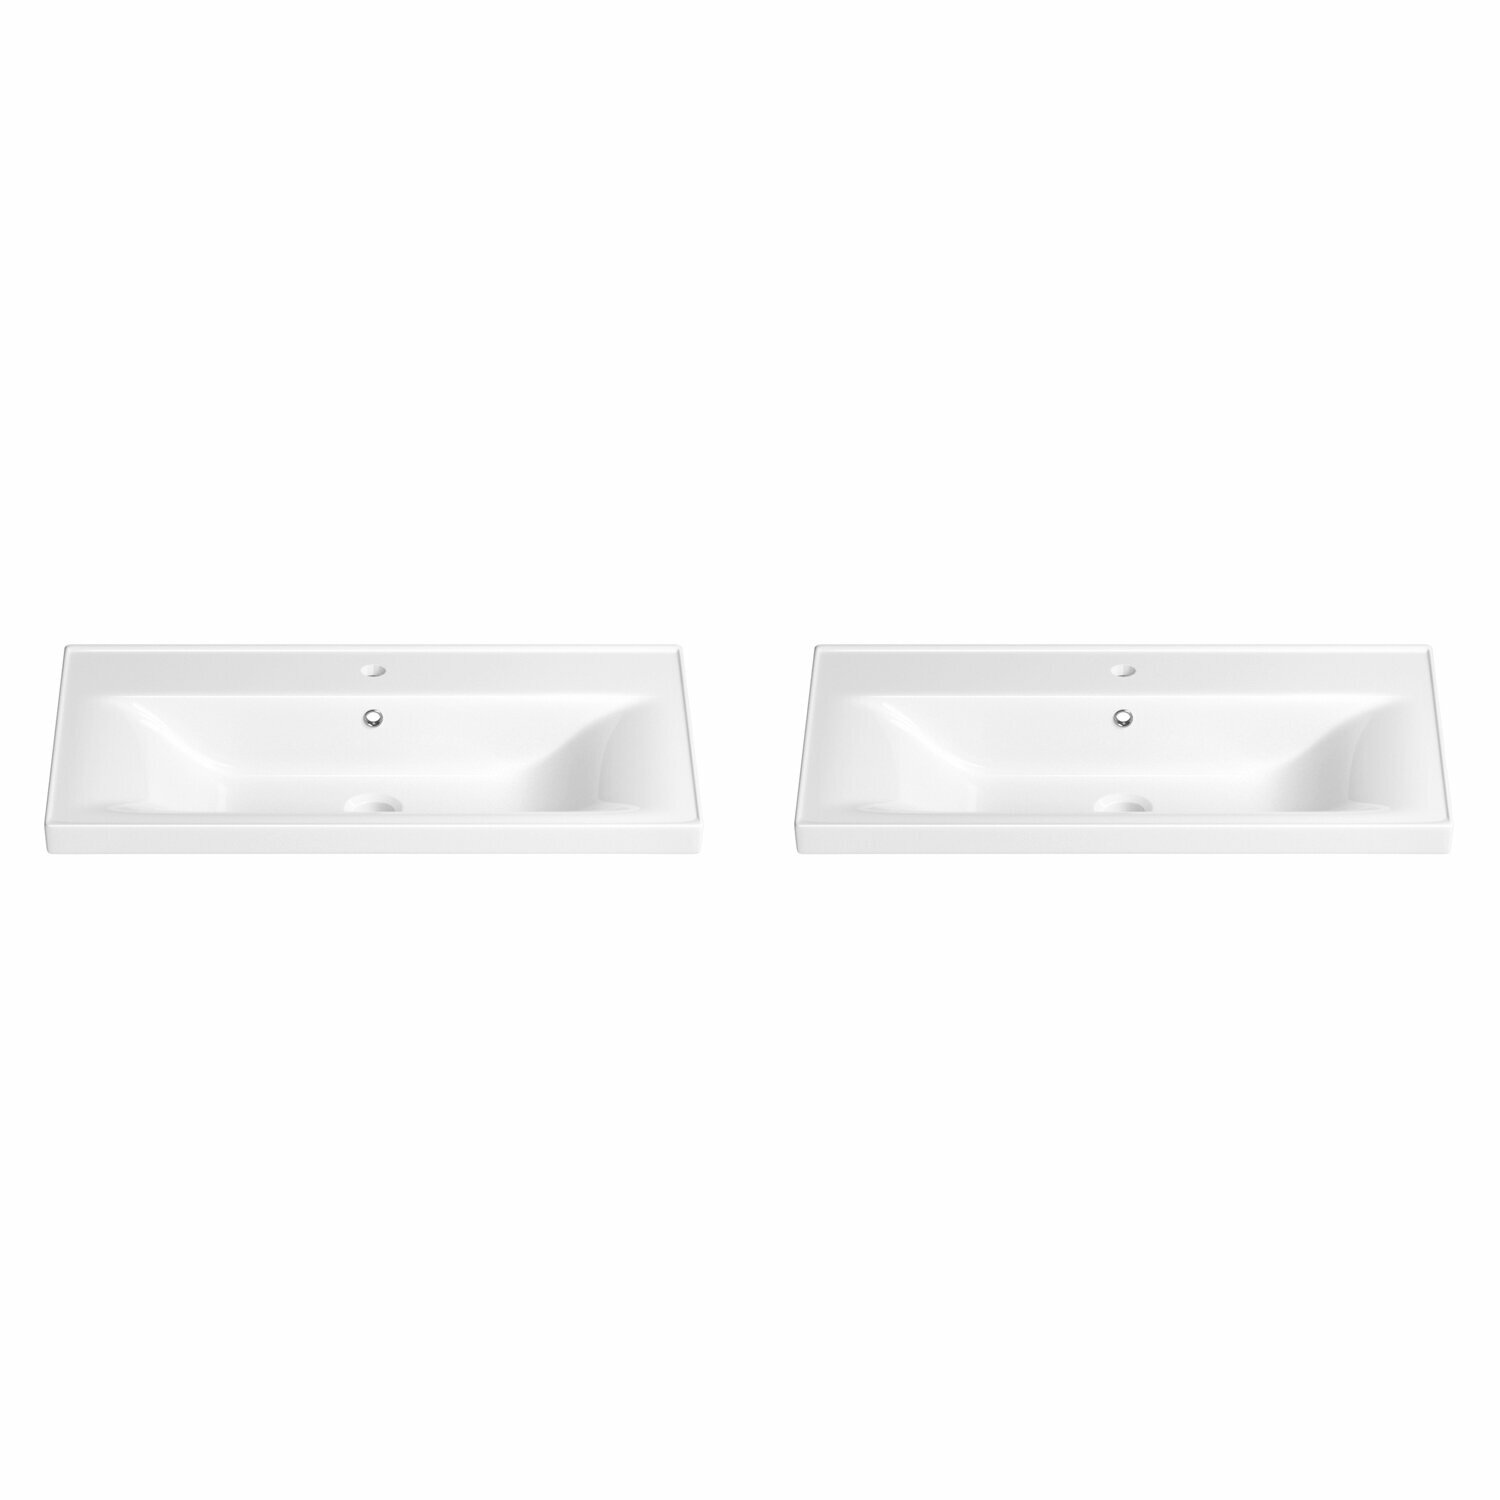 Подвесная/мебельная раковина для ванной Wellsee FreeDom 151105001 в наборе 2 в 1: раковины 2 шт, ширина одного умывальника 70 см, цвет глянцевый белый